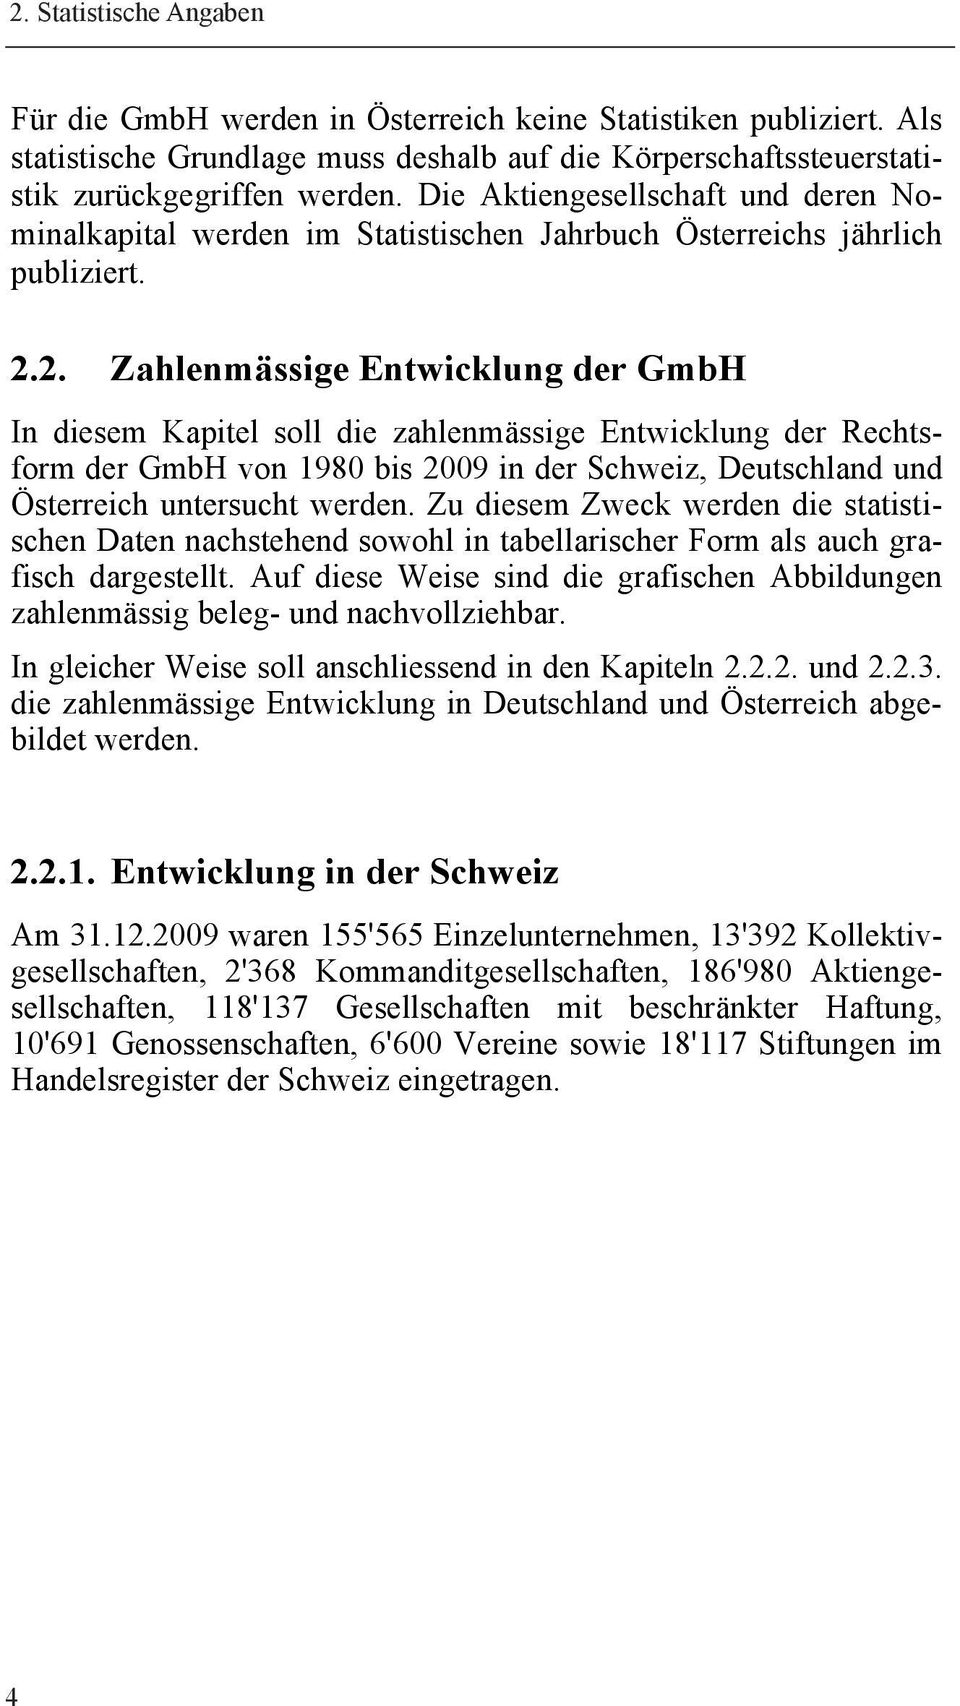 2. Zahlenmässige Entwicklung der GmbH In diesem Kapitel soll die zahlenmässige Entwicklung der Rechtsform der GmbH von 1980 bis 2009 in der Schweiz, Deutschland und Österreich untersucht werden.